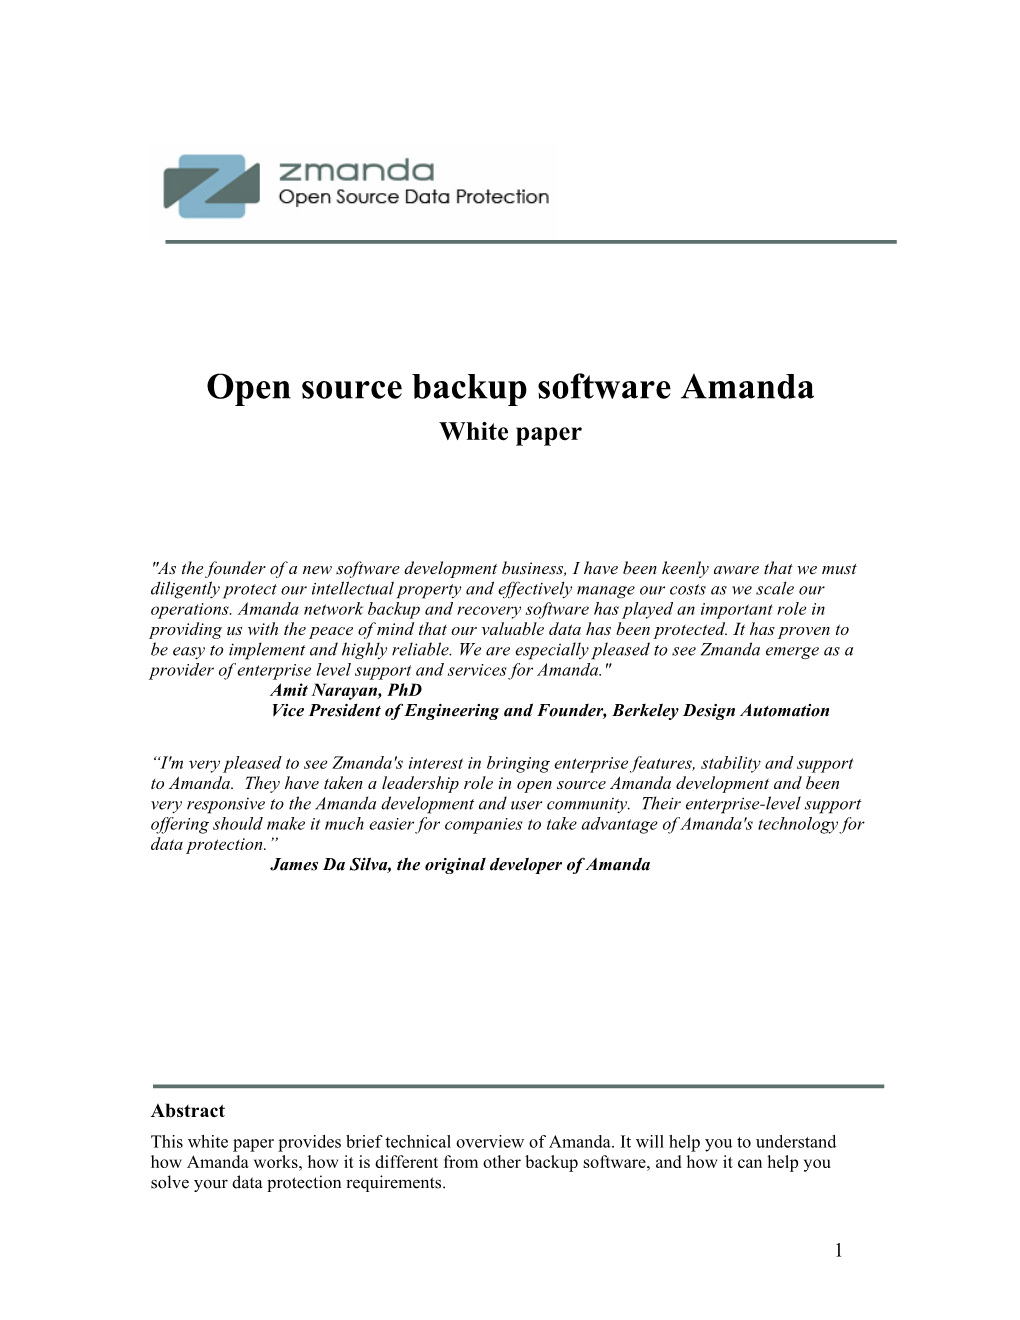 Open Source Backup Amanda